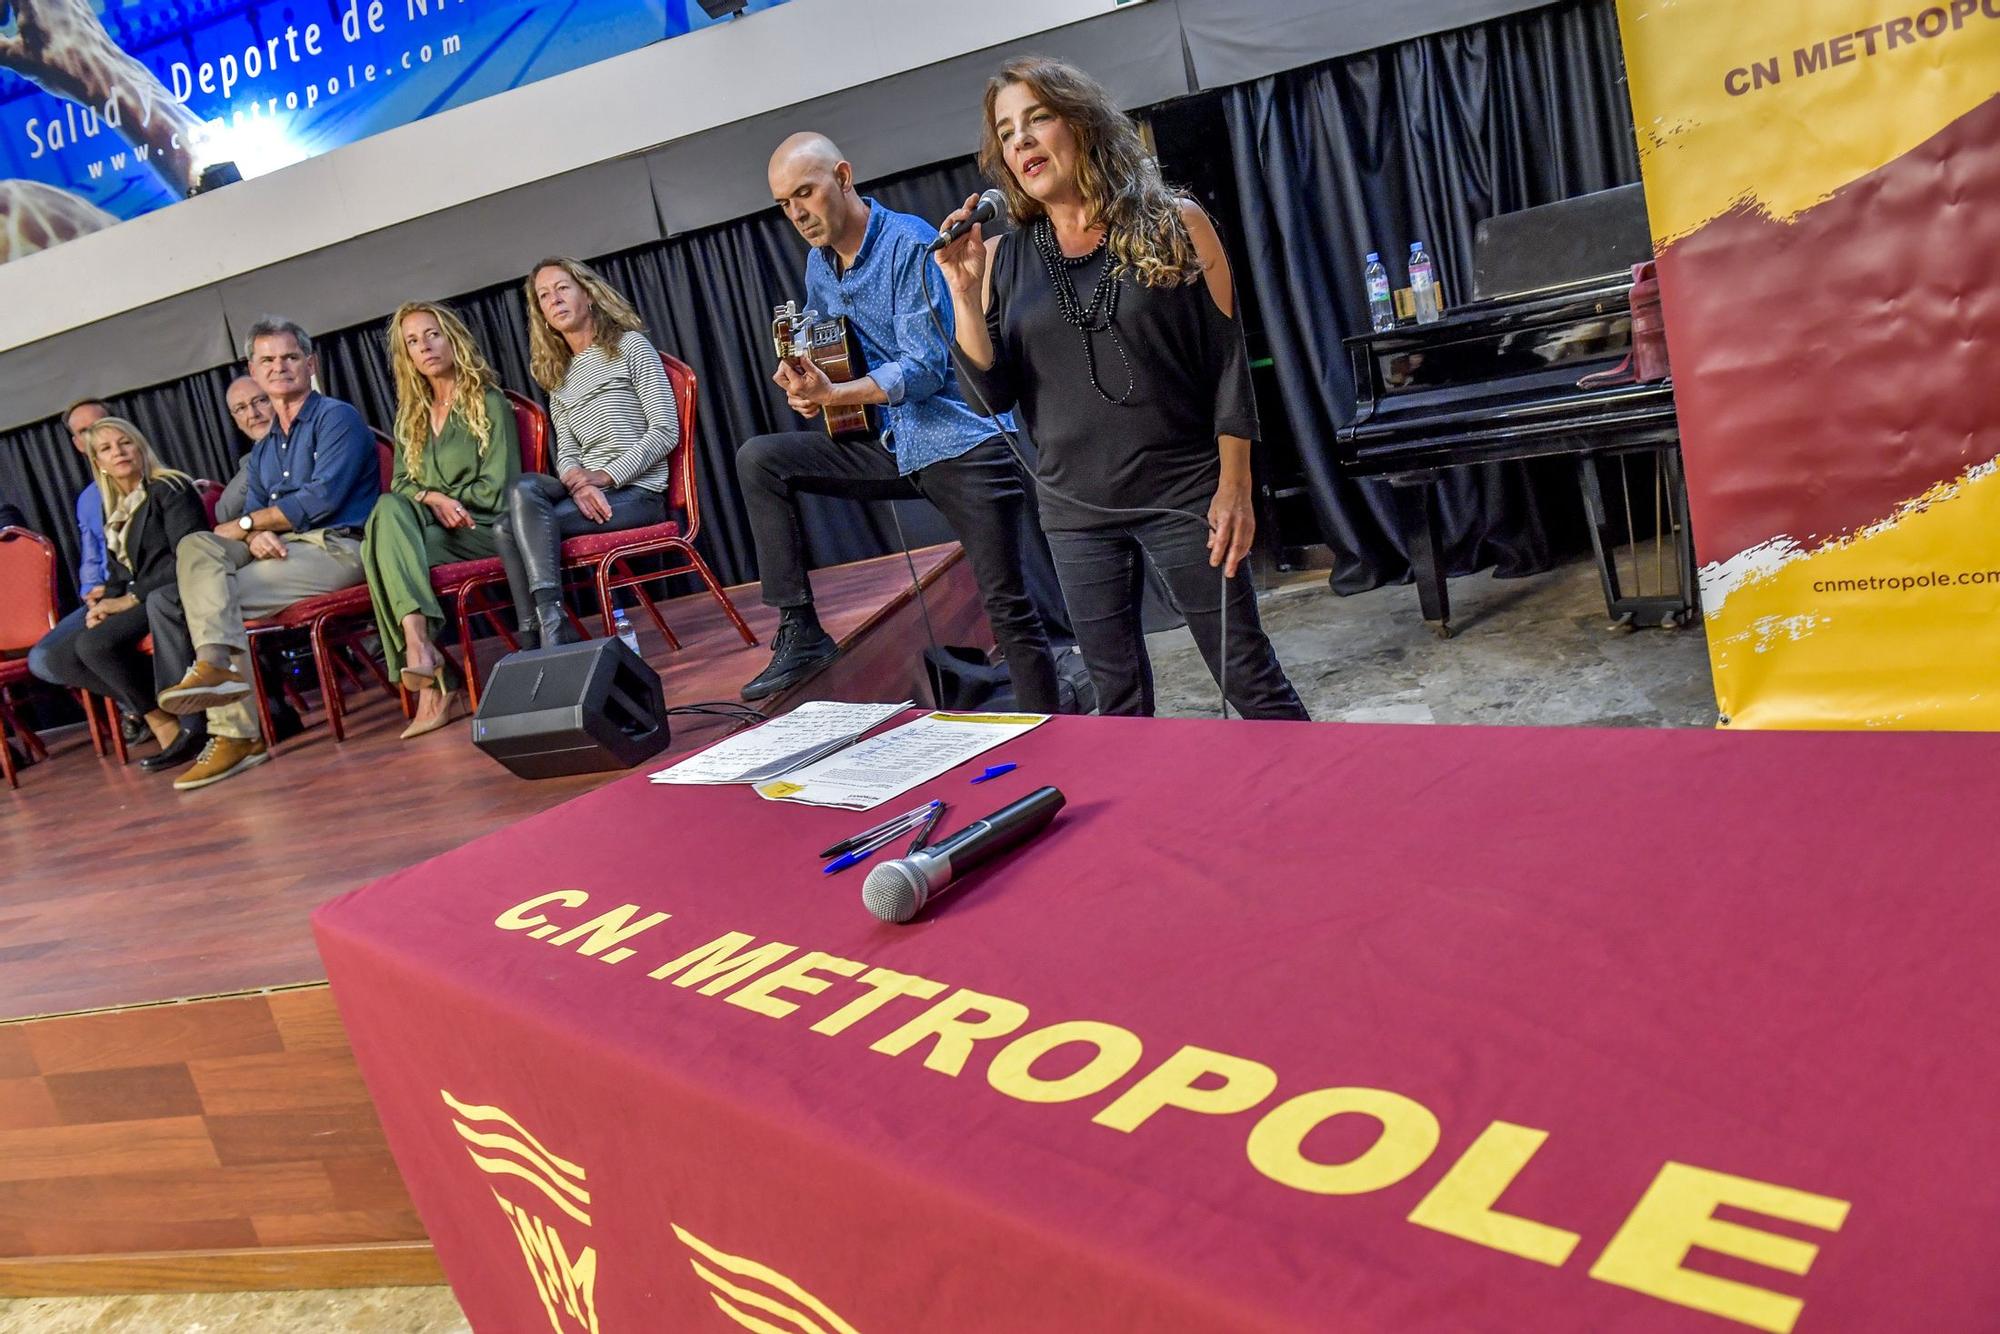 El CN Metropole presenta en rueda de prensa a su nueva directiva